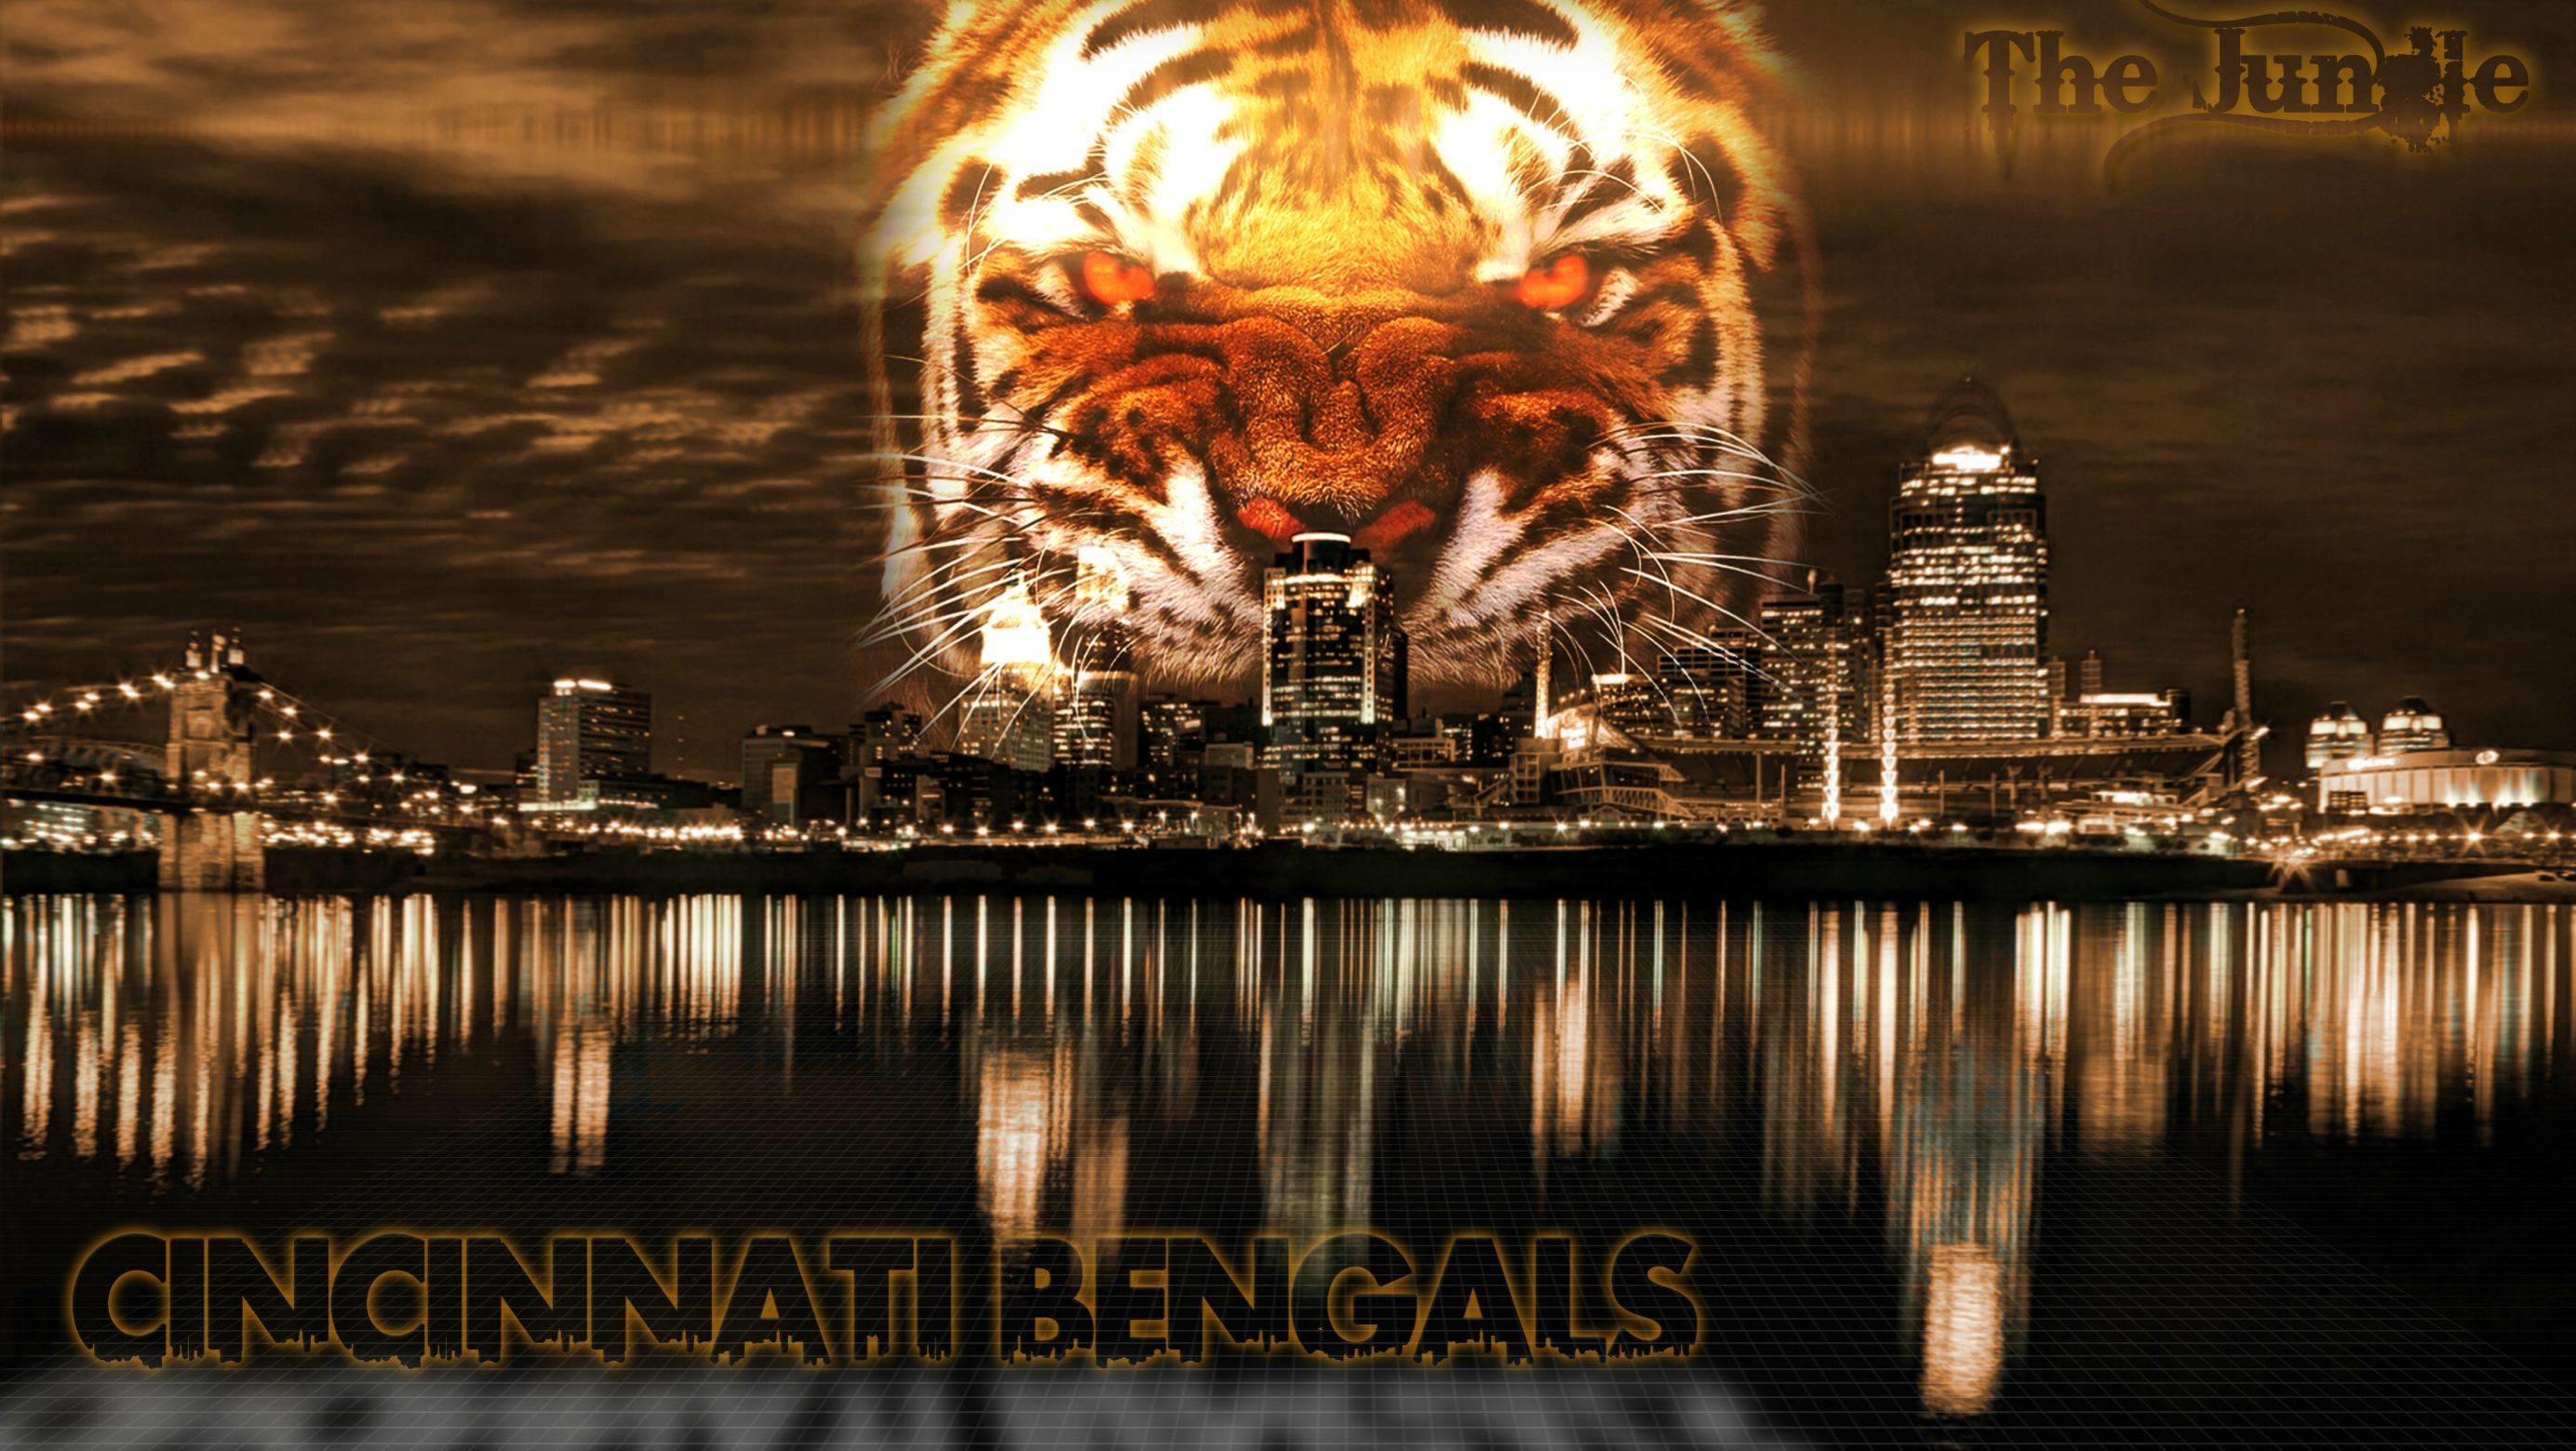 Filename: Cincinnati Bengals